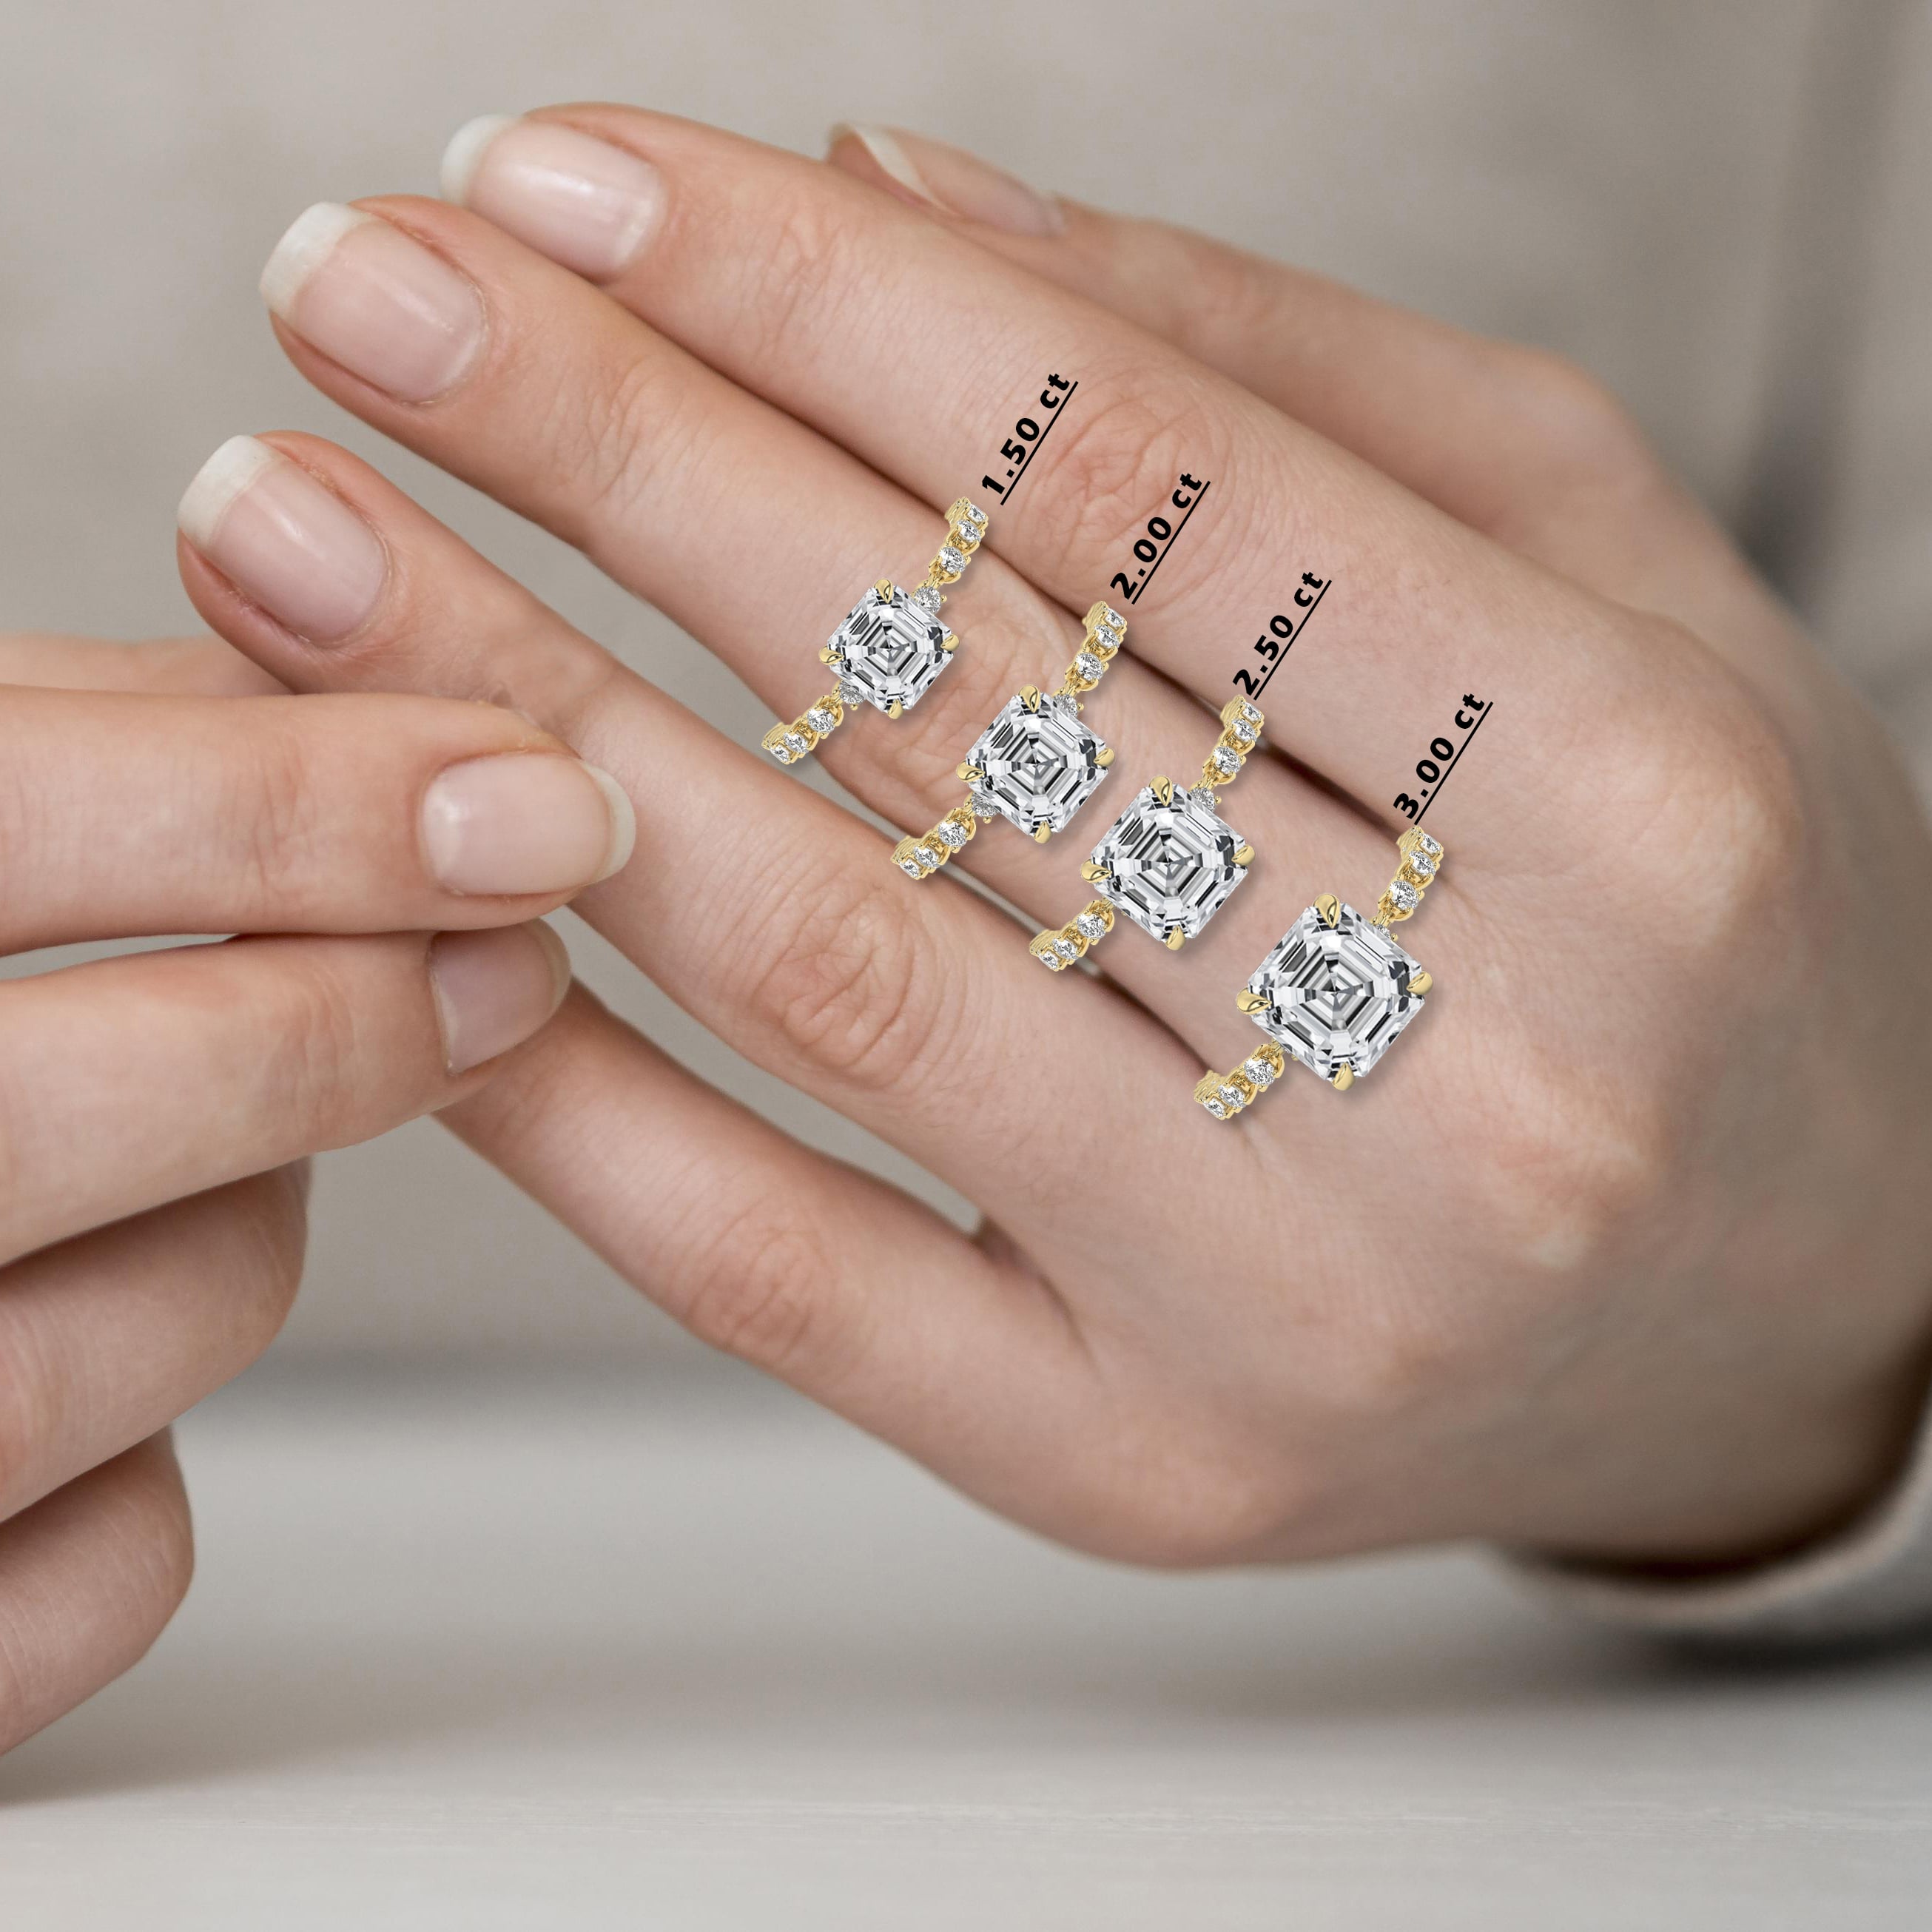 Asscher cut diamond engagement ring on woman hand 